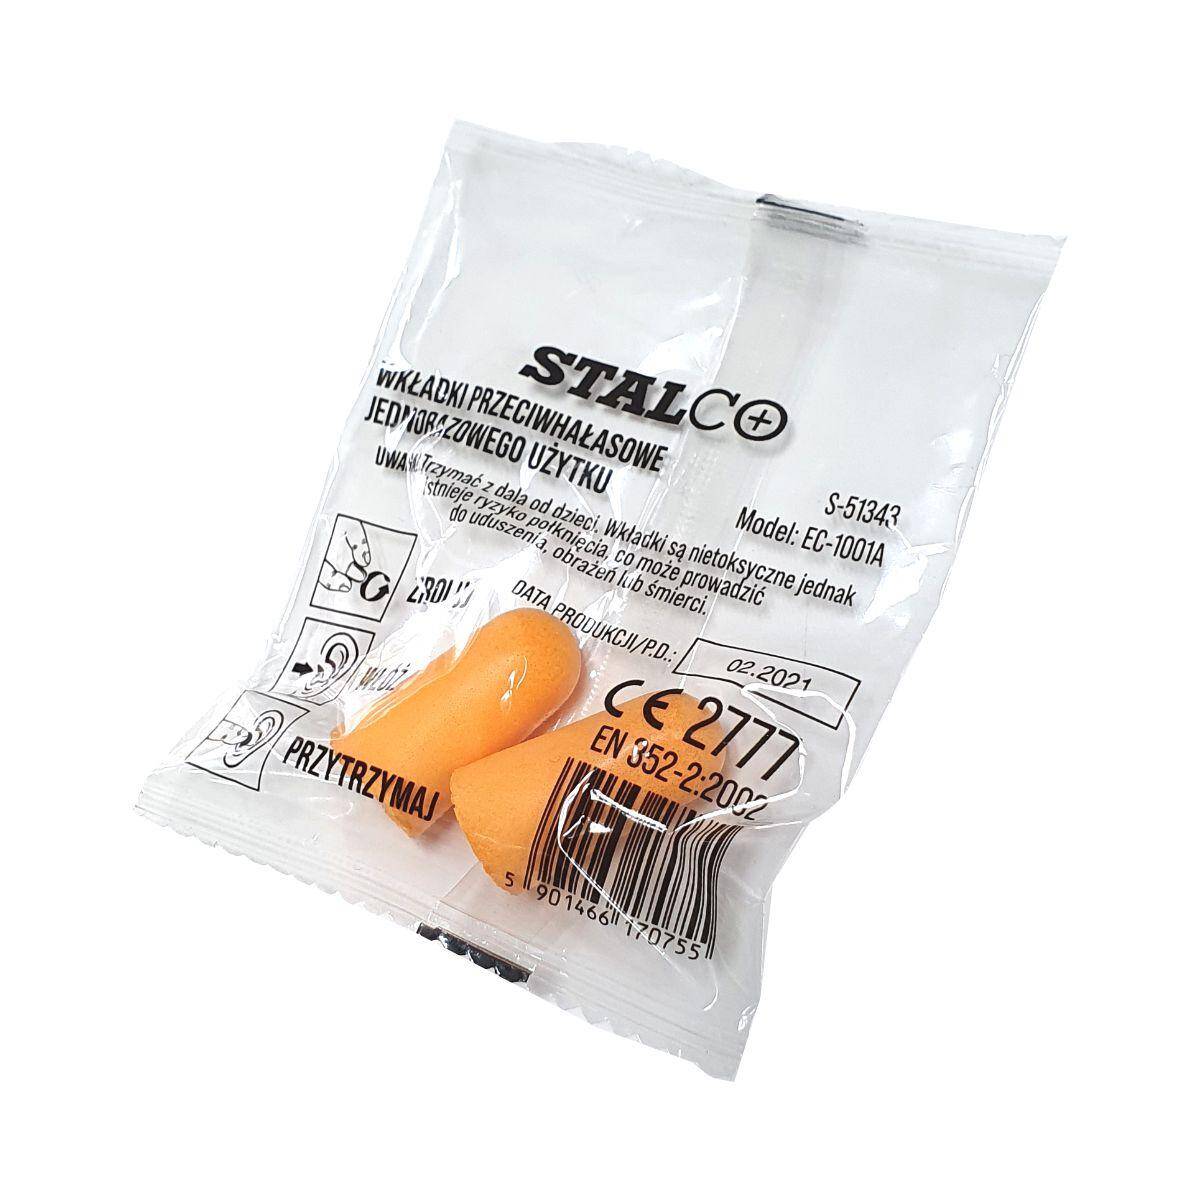 Stopery pomarańczowe PLUG (2 szt.) STALCO S-51343